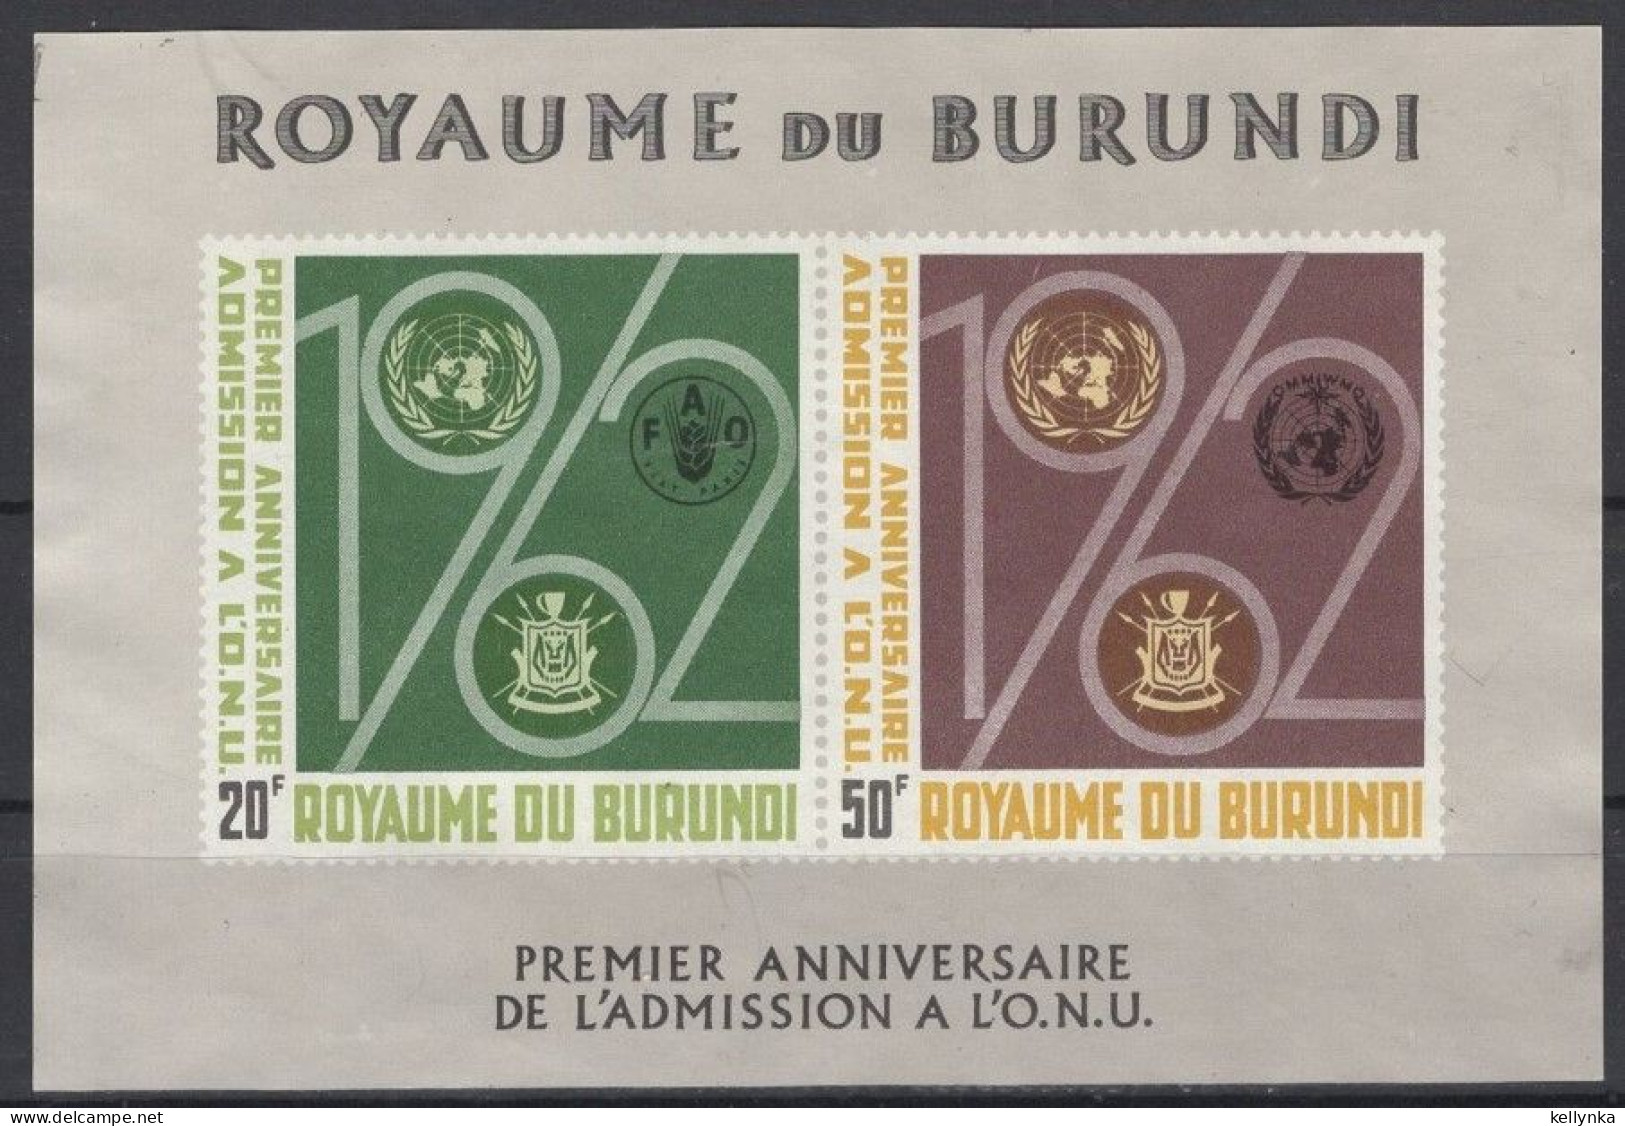 Burundi - BL2 - ONU - 1963 - MNH - Neufs